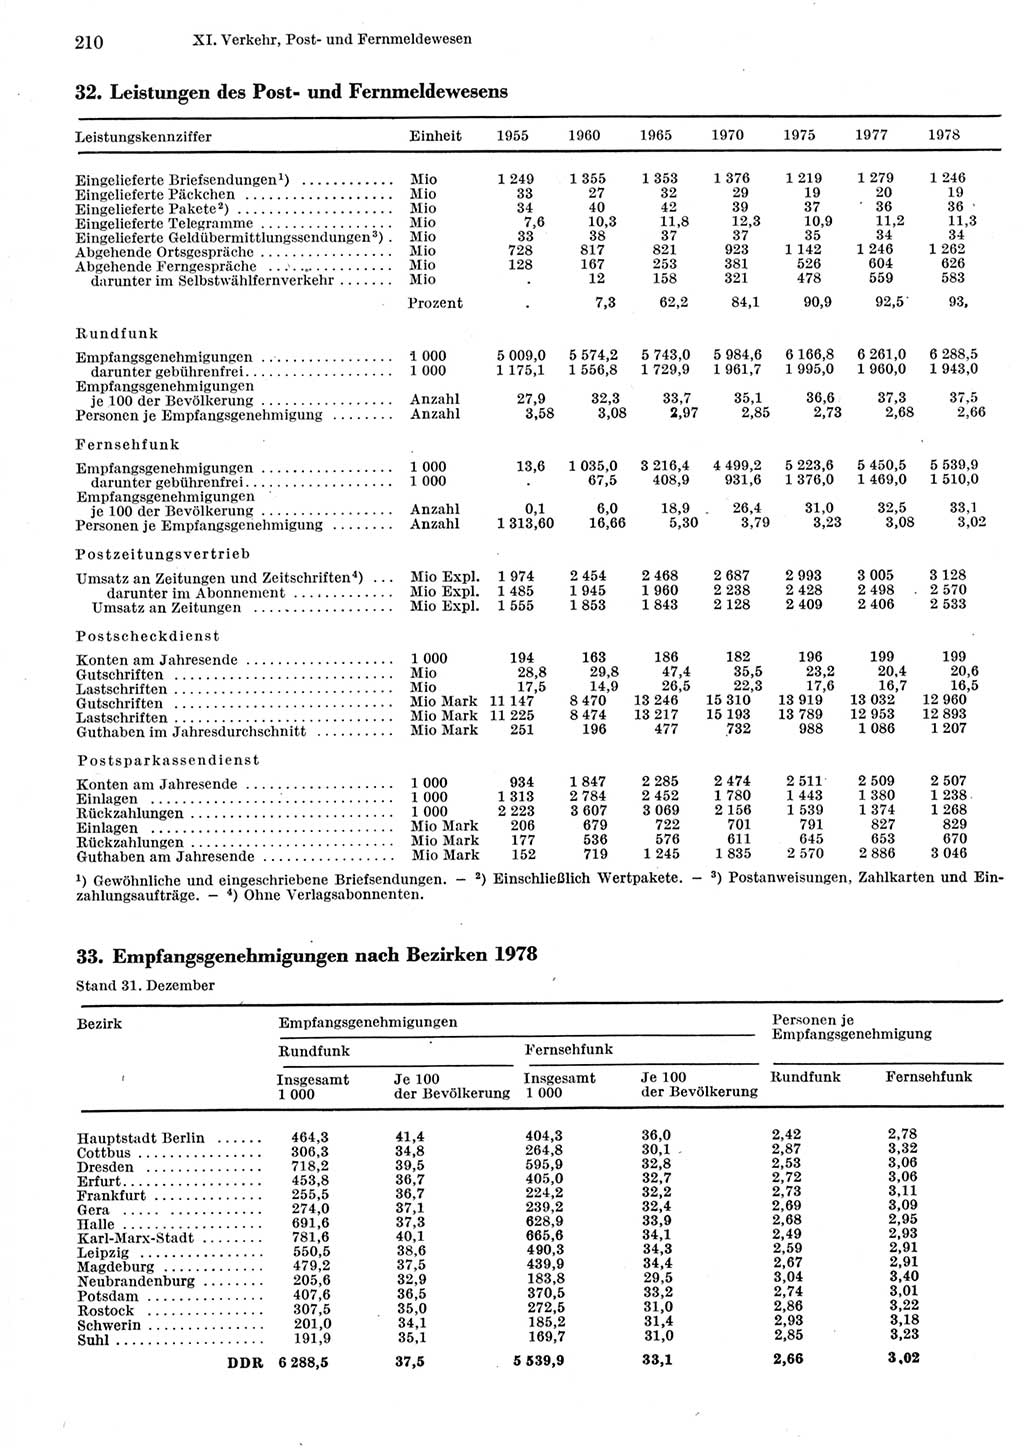 Statistisches Jahrbuch der Deutschen Demokratischen Republik (DDR) 1979, Seite 210 (Stat. Jb. DDR 1979, S. 210)